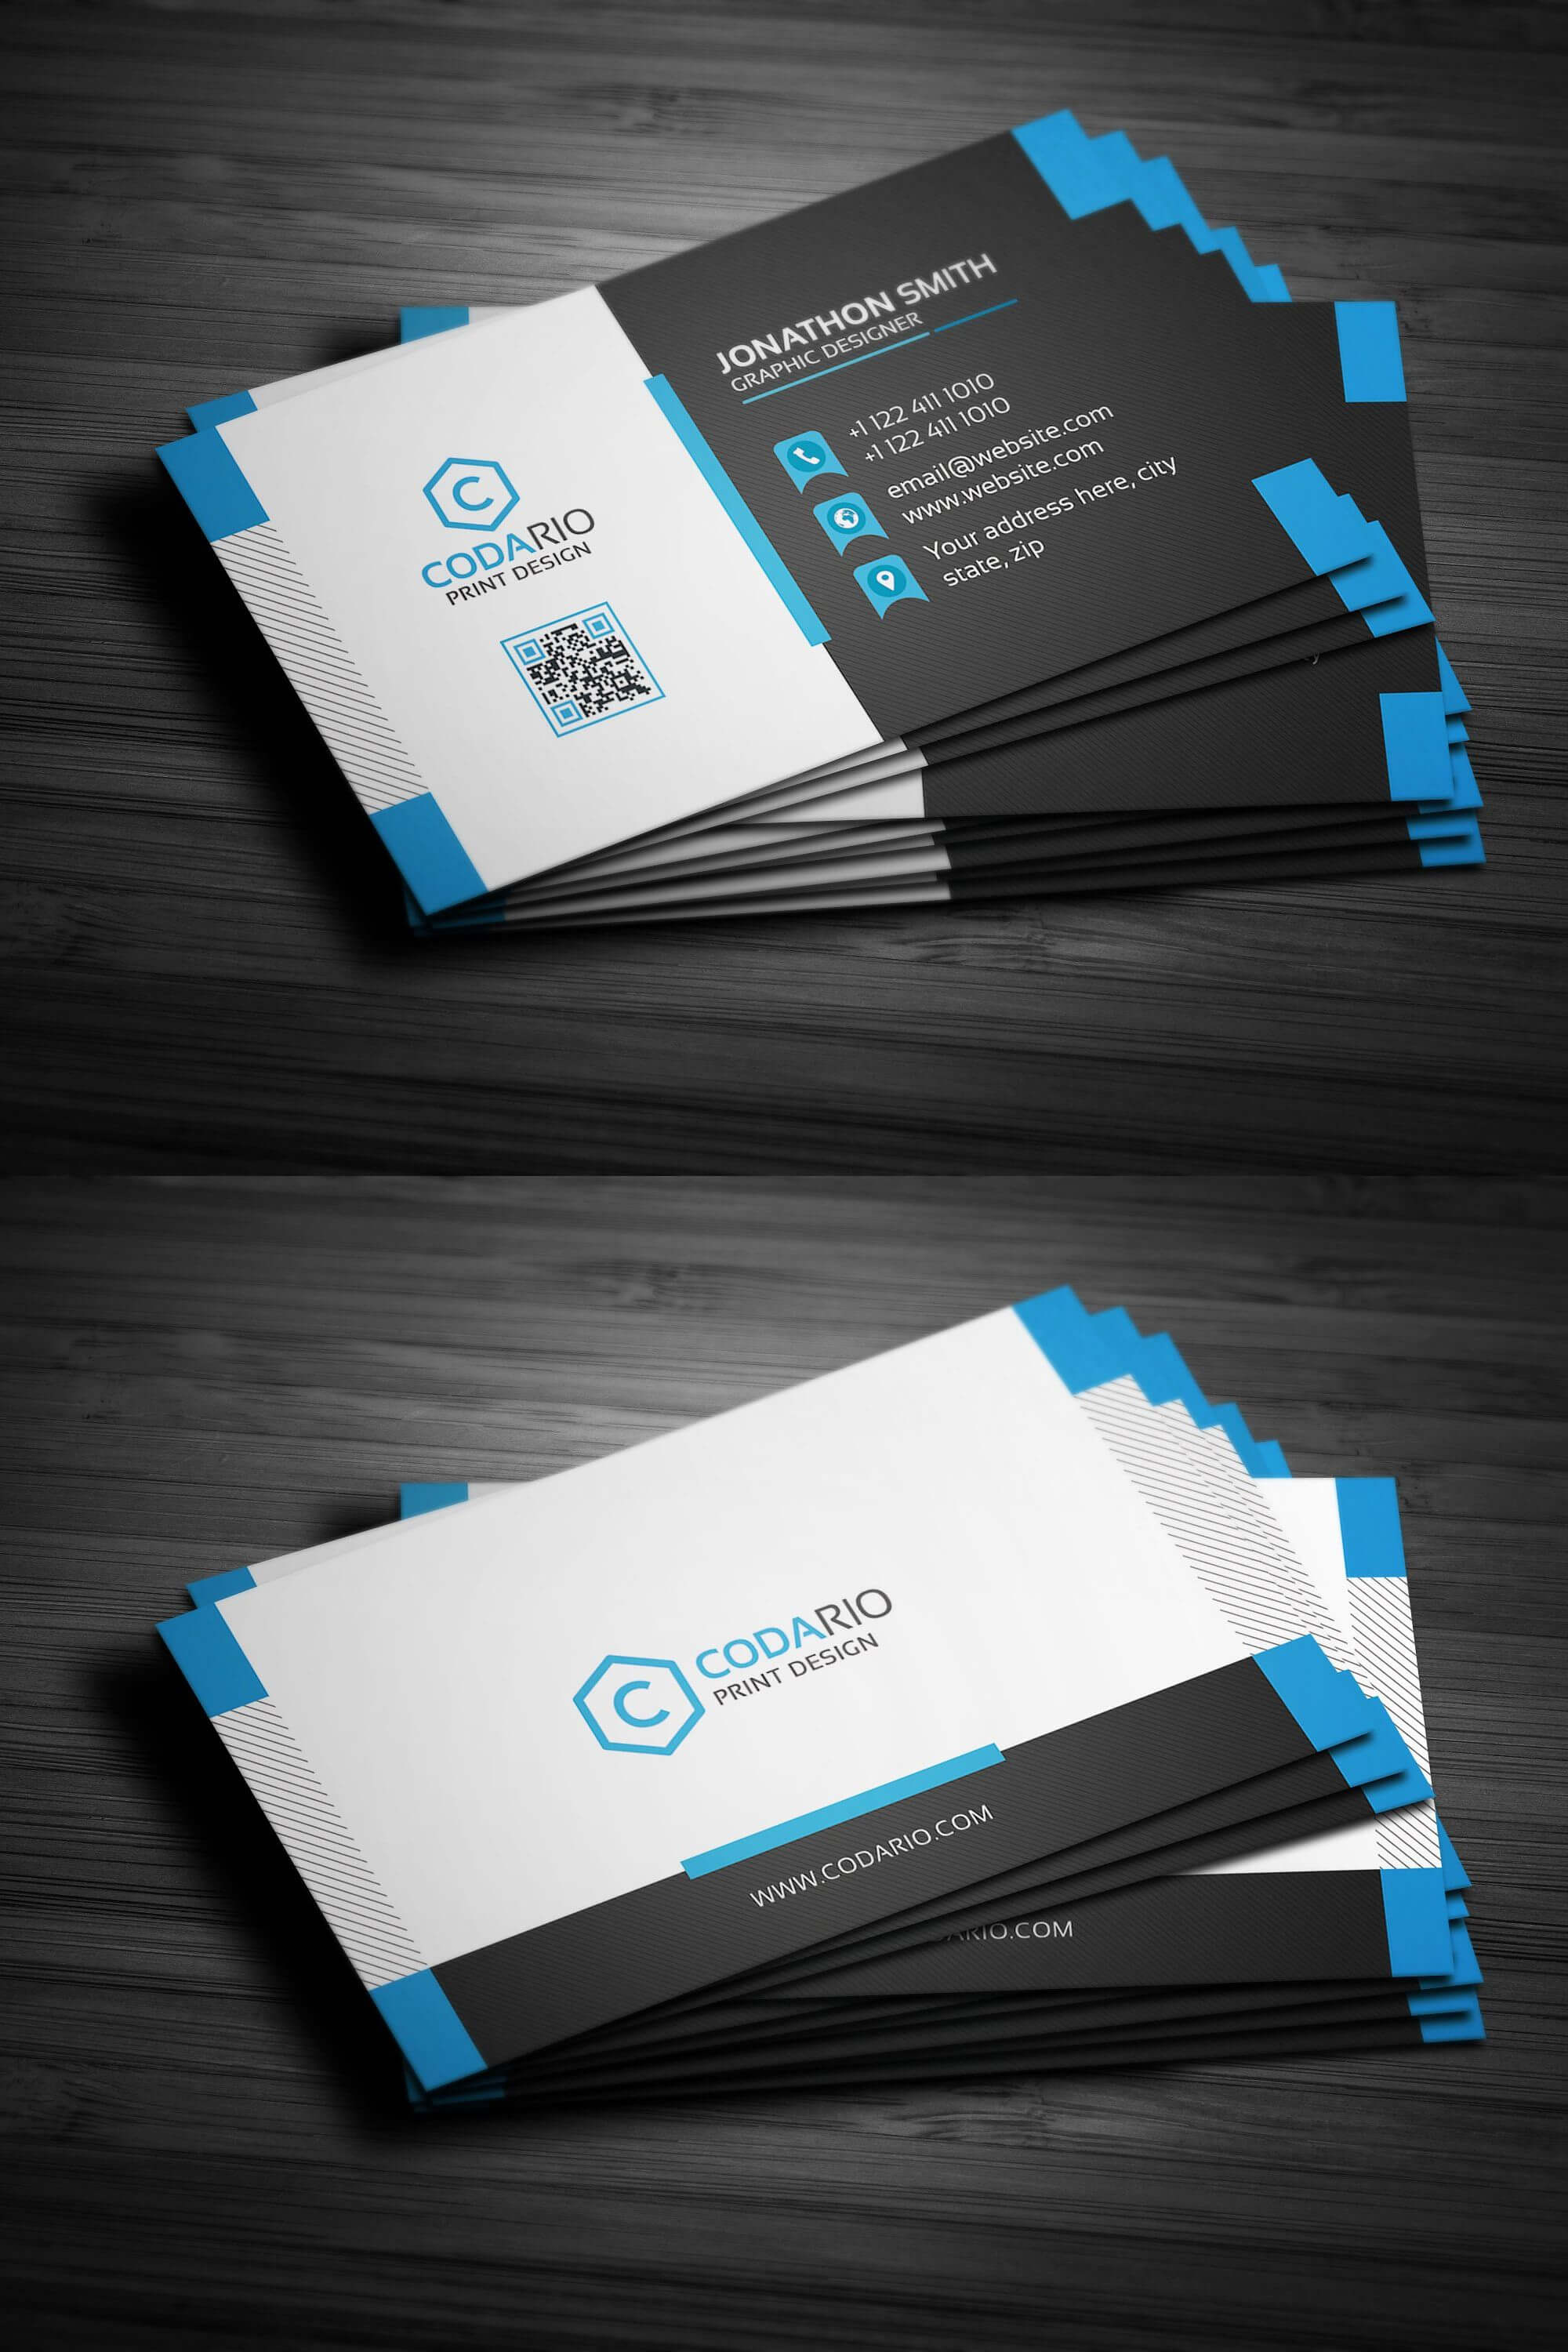 Modern Creative Business Card Template Psd | Business Card Within Create Business Card Template Photoshop